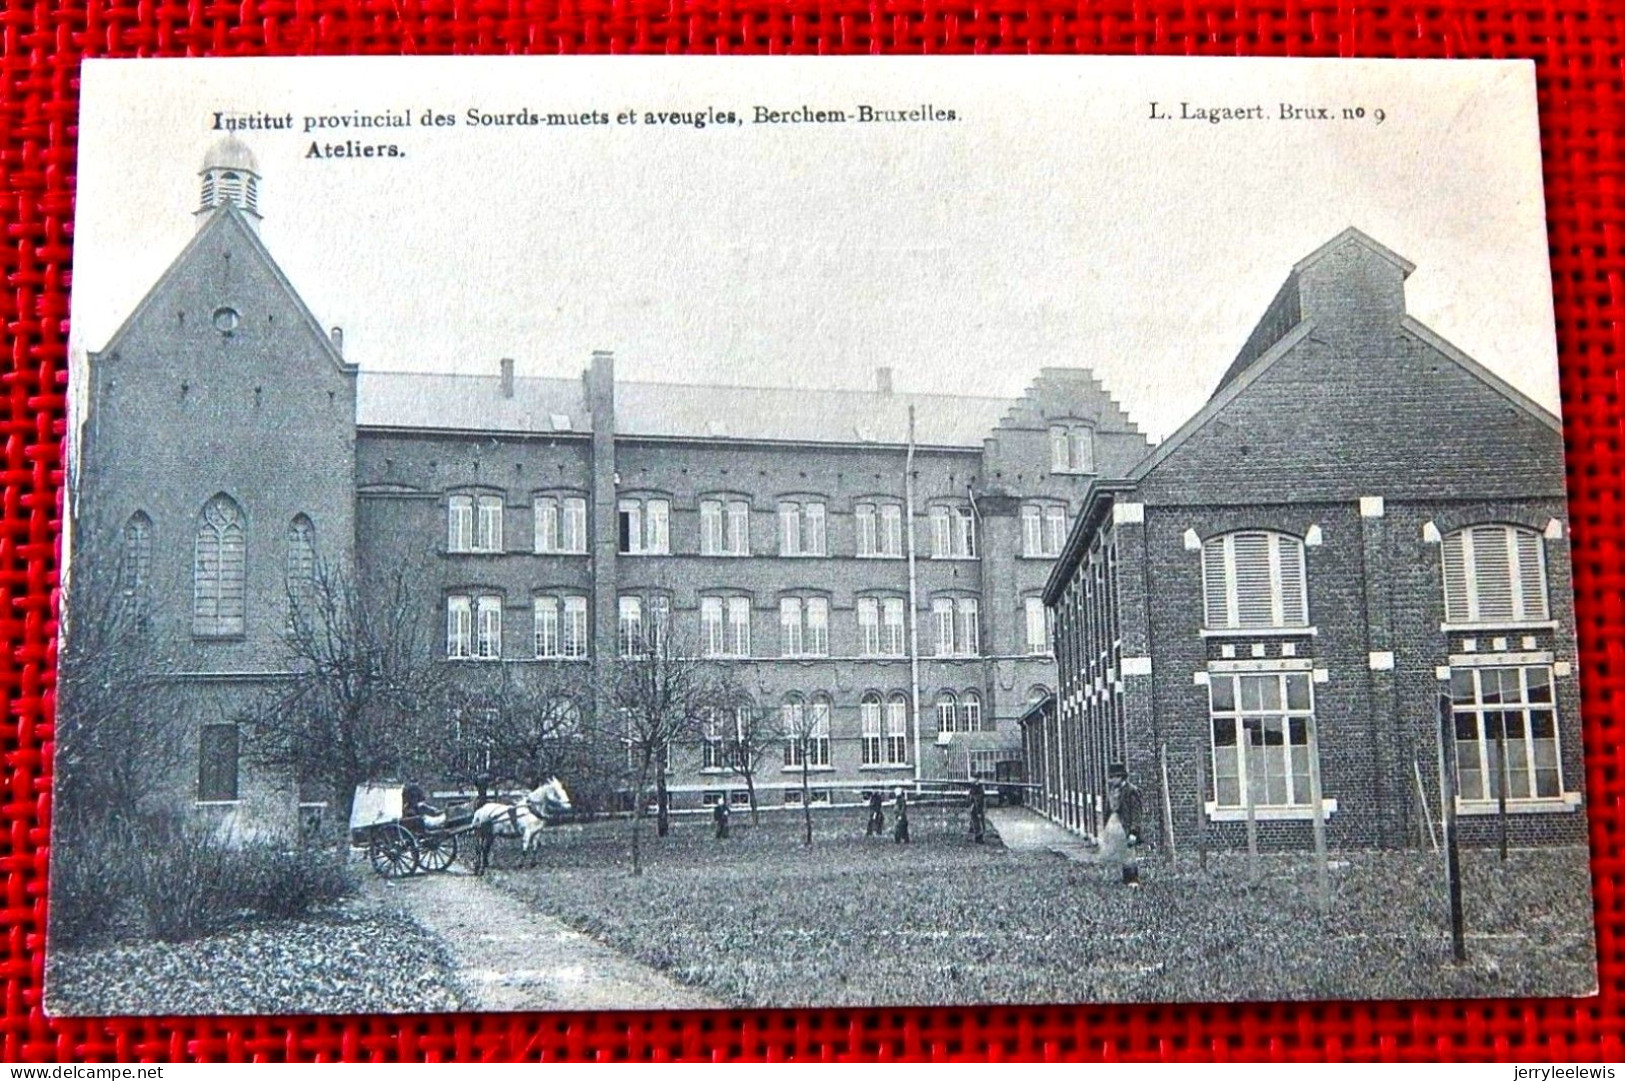 BERCHEM-Ste-AGATHE  -  Institut Provincial Des Sourds-Muets Et Aveugles  -  Ateliers - St-Agatha-Berchem - Berchem-Ste-Agathe